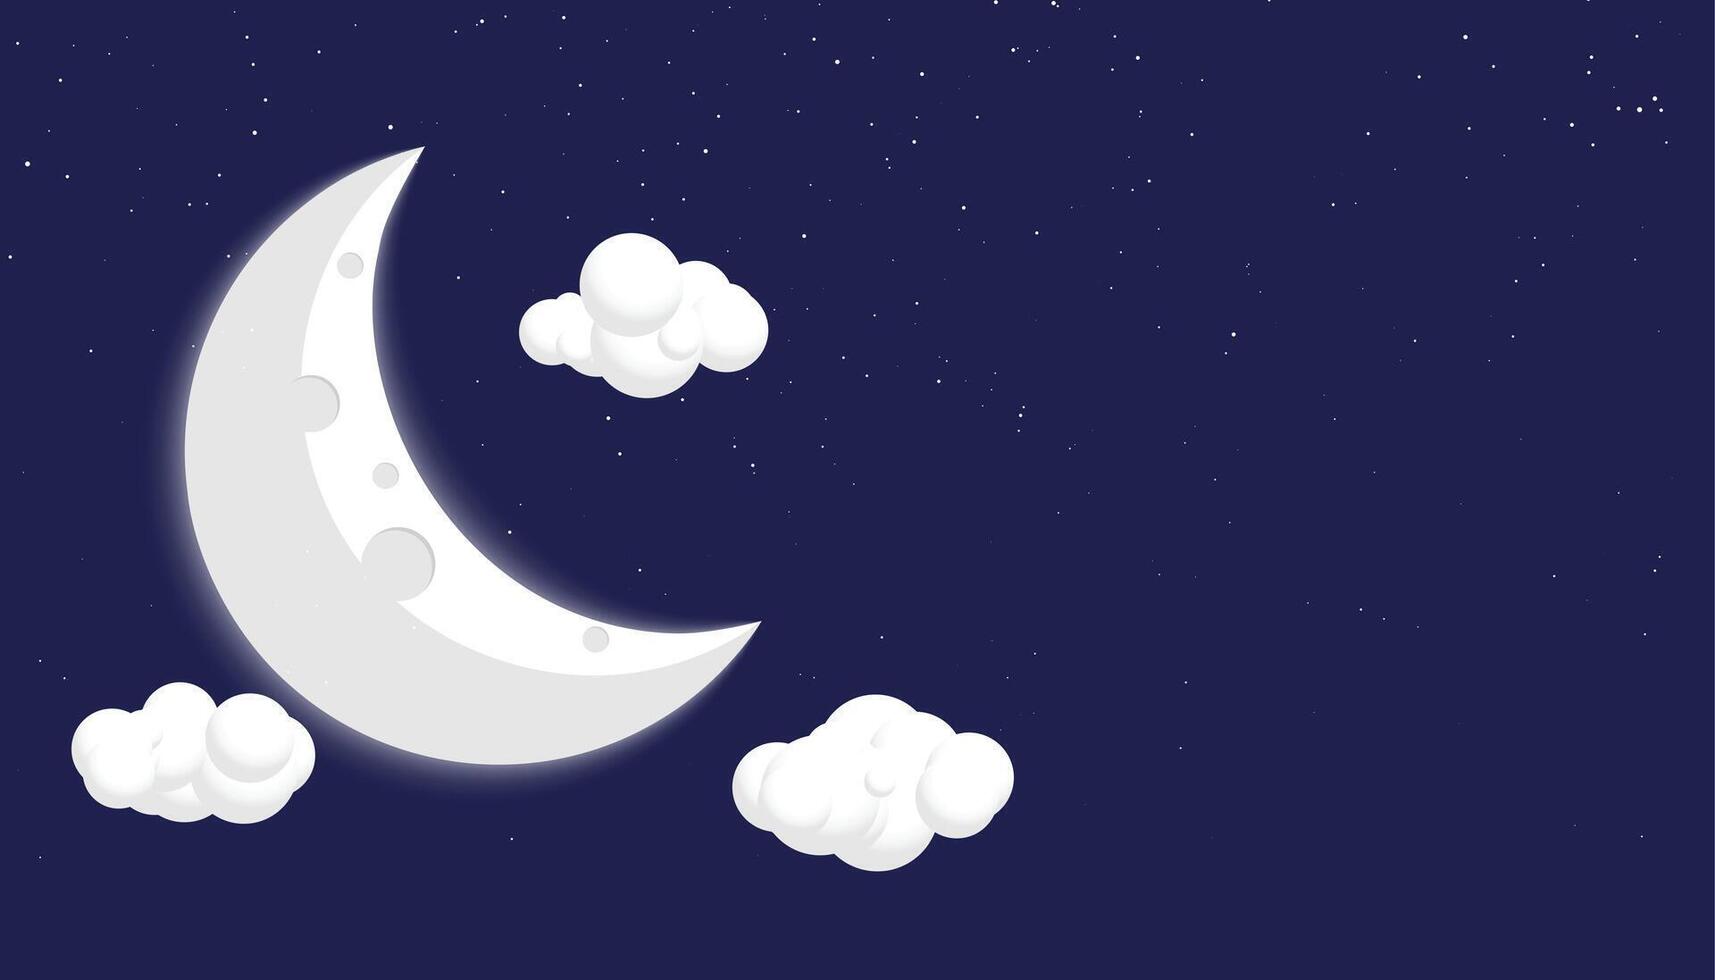 cómic estilo Luna estrellas y nubes antecedentes diseño vector